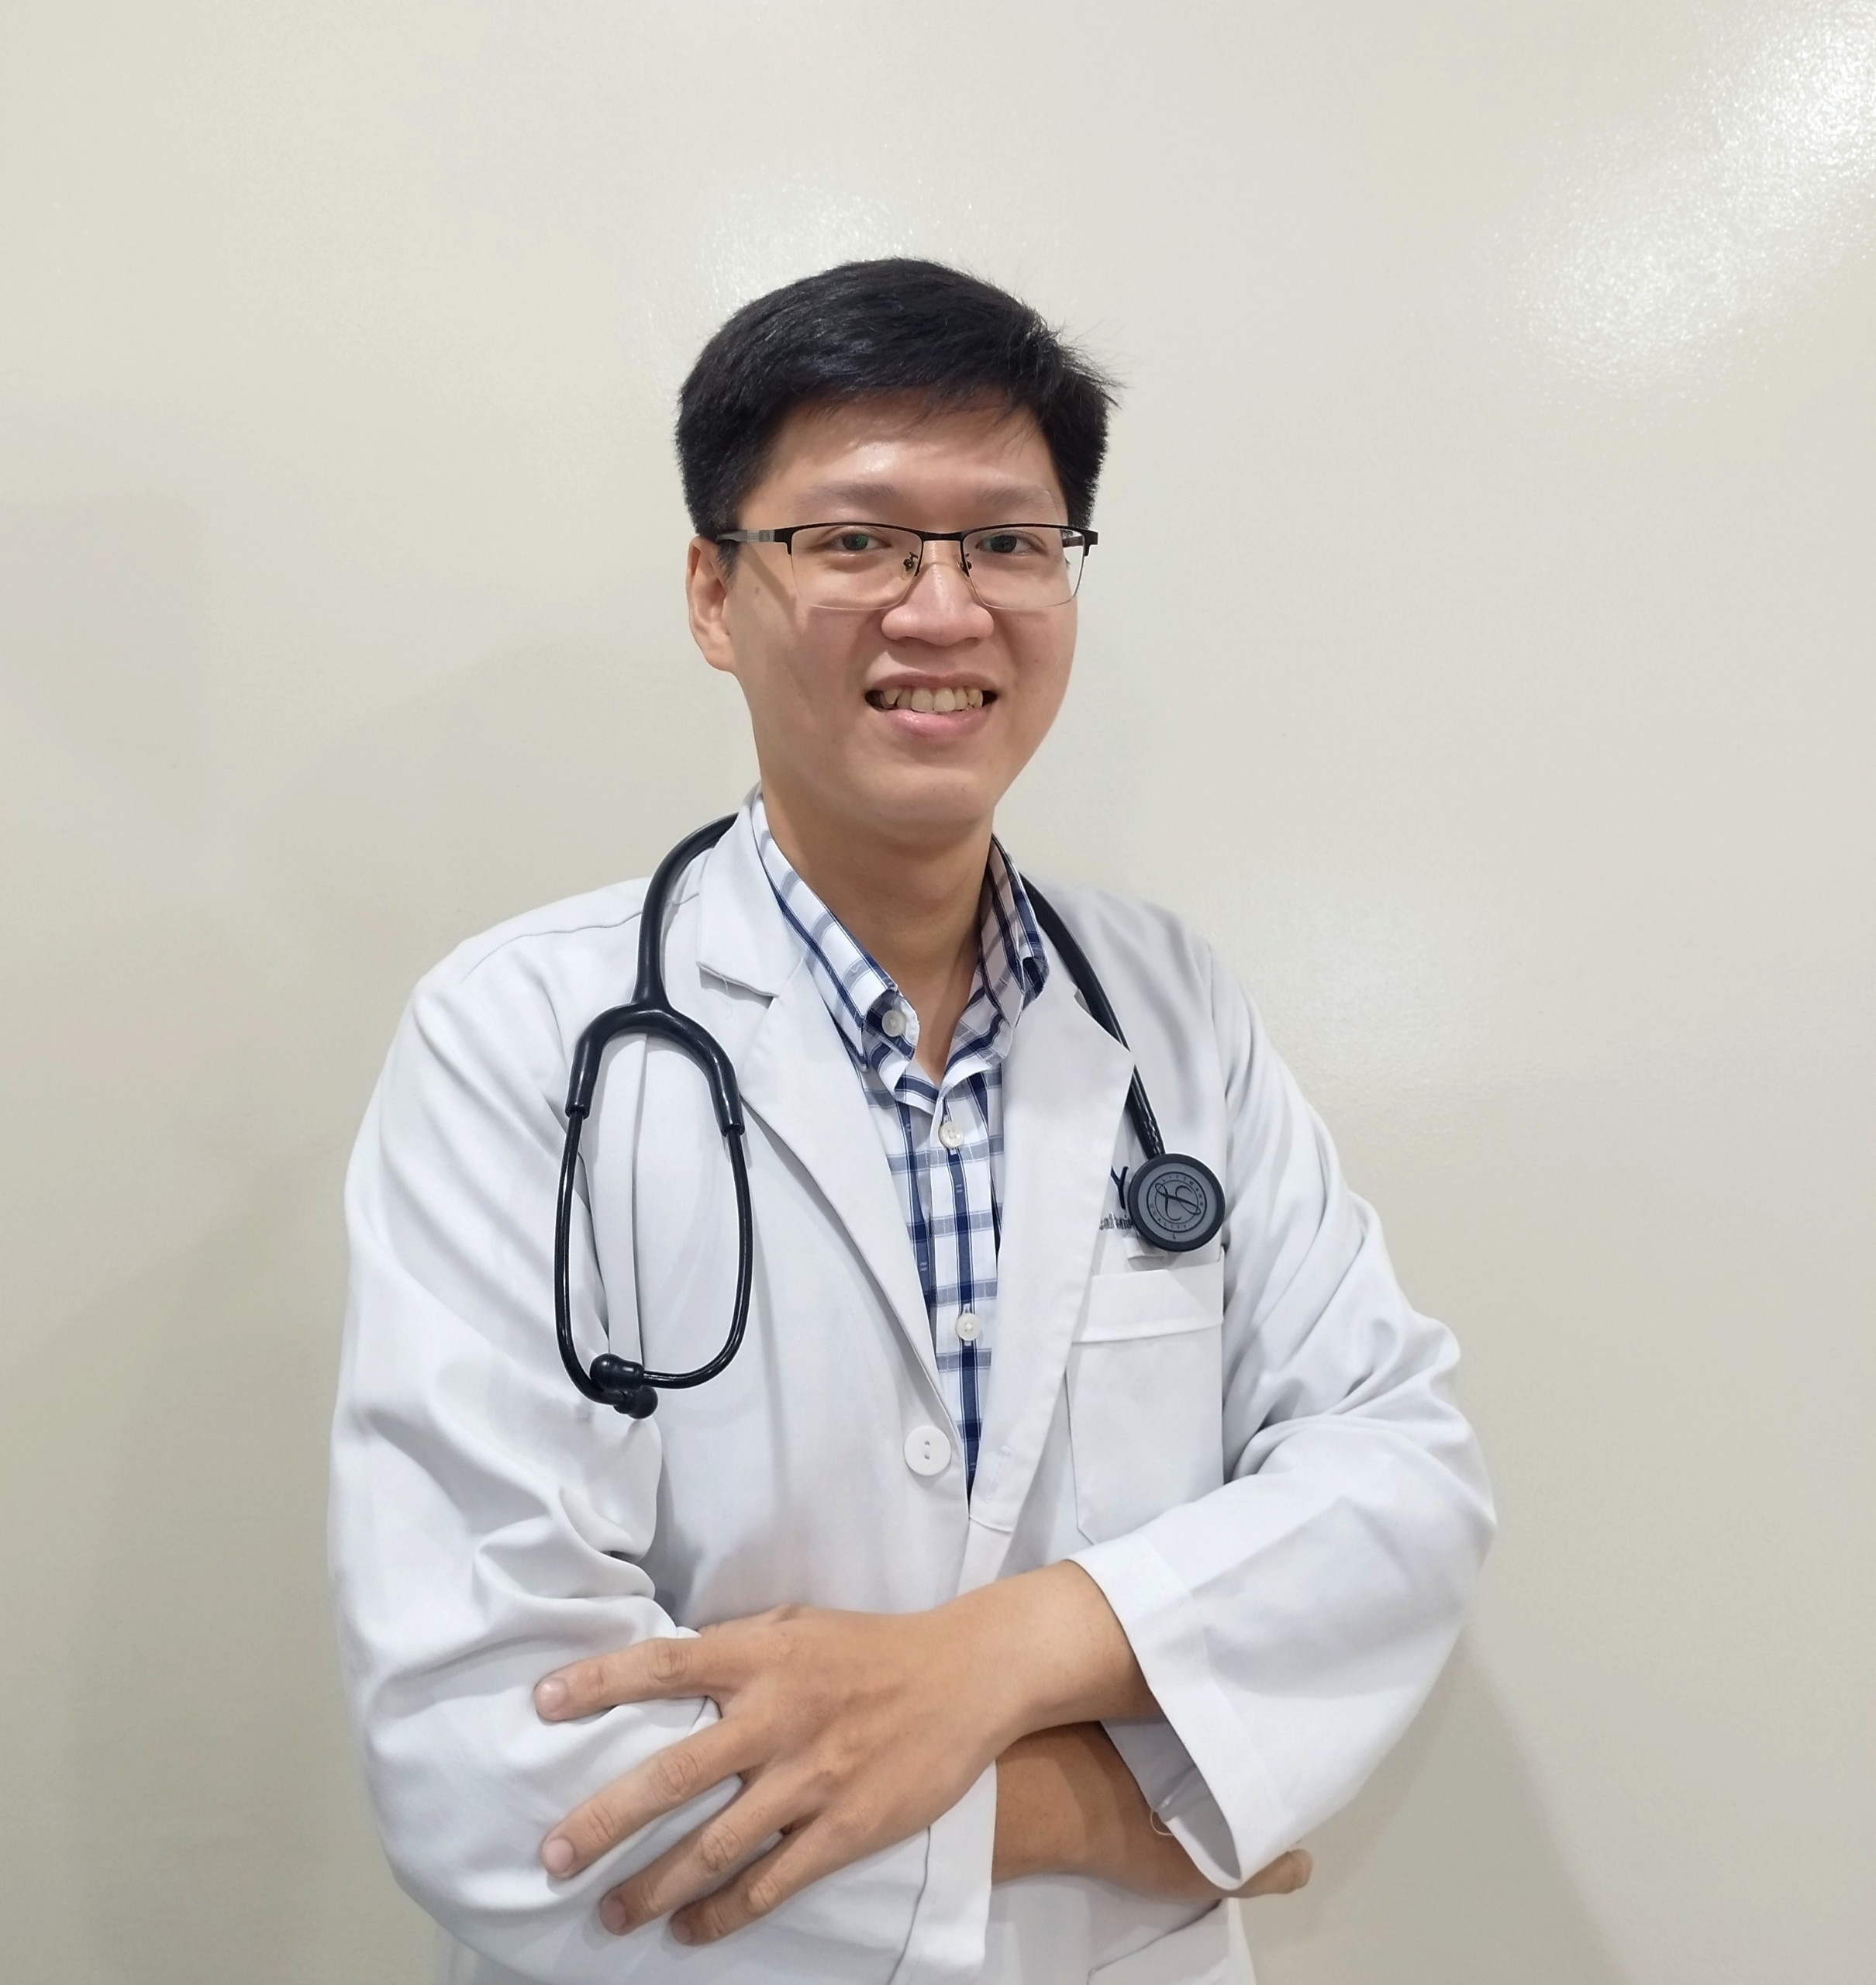 DR. HUYNH NHAT ANH フイン ニャット アイン 医師 PHAM NGOC THACH医科大学卒業